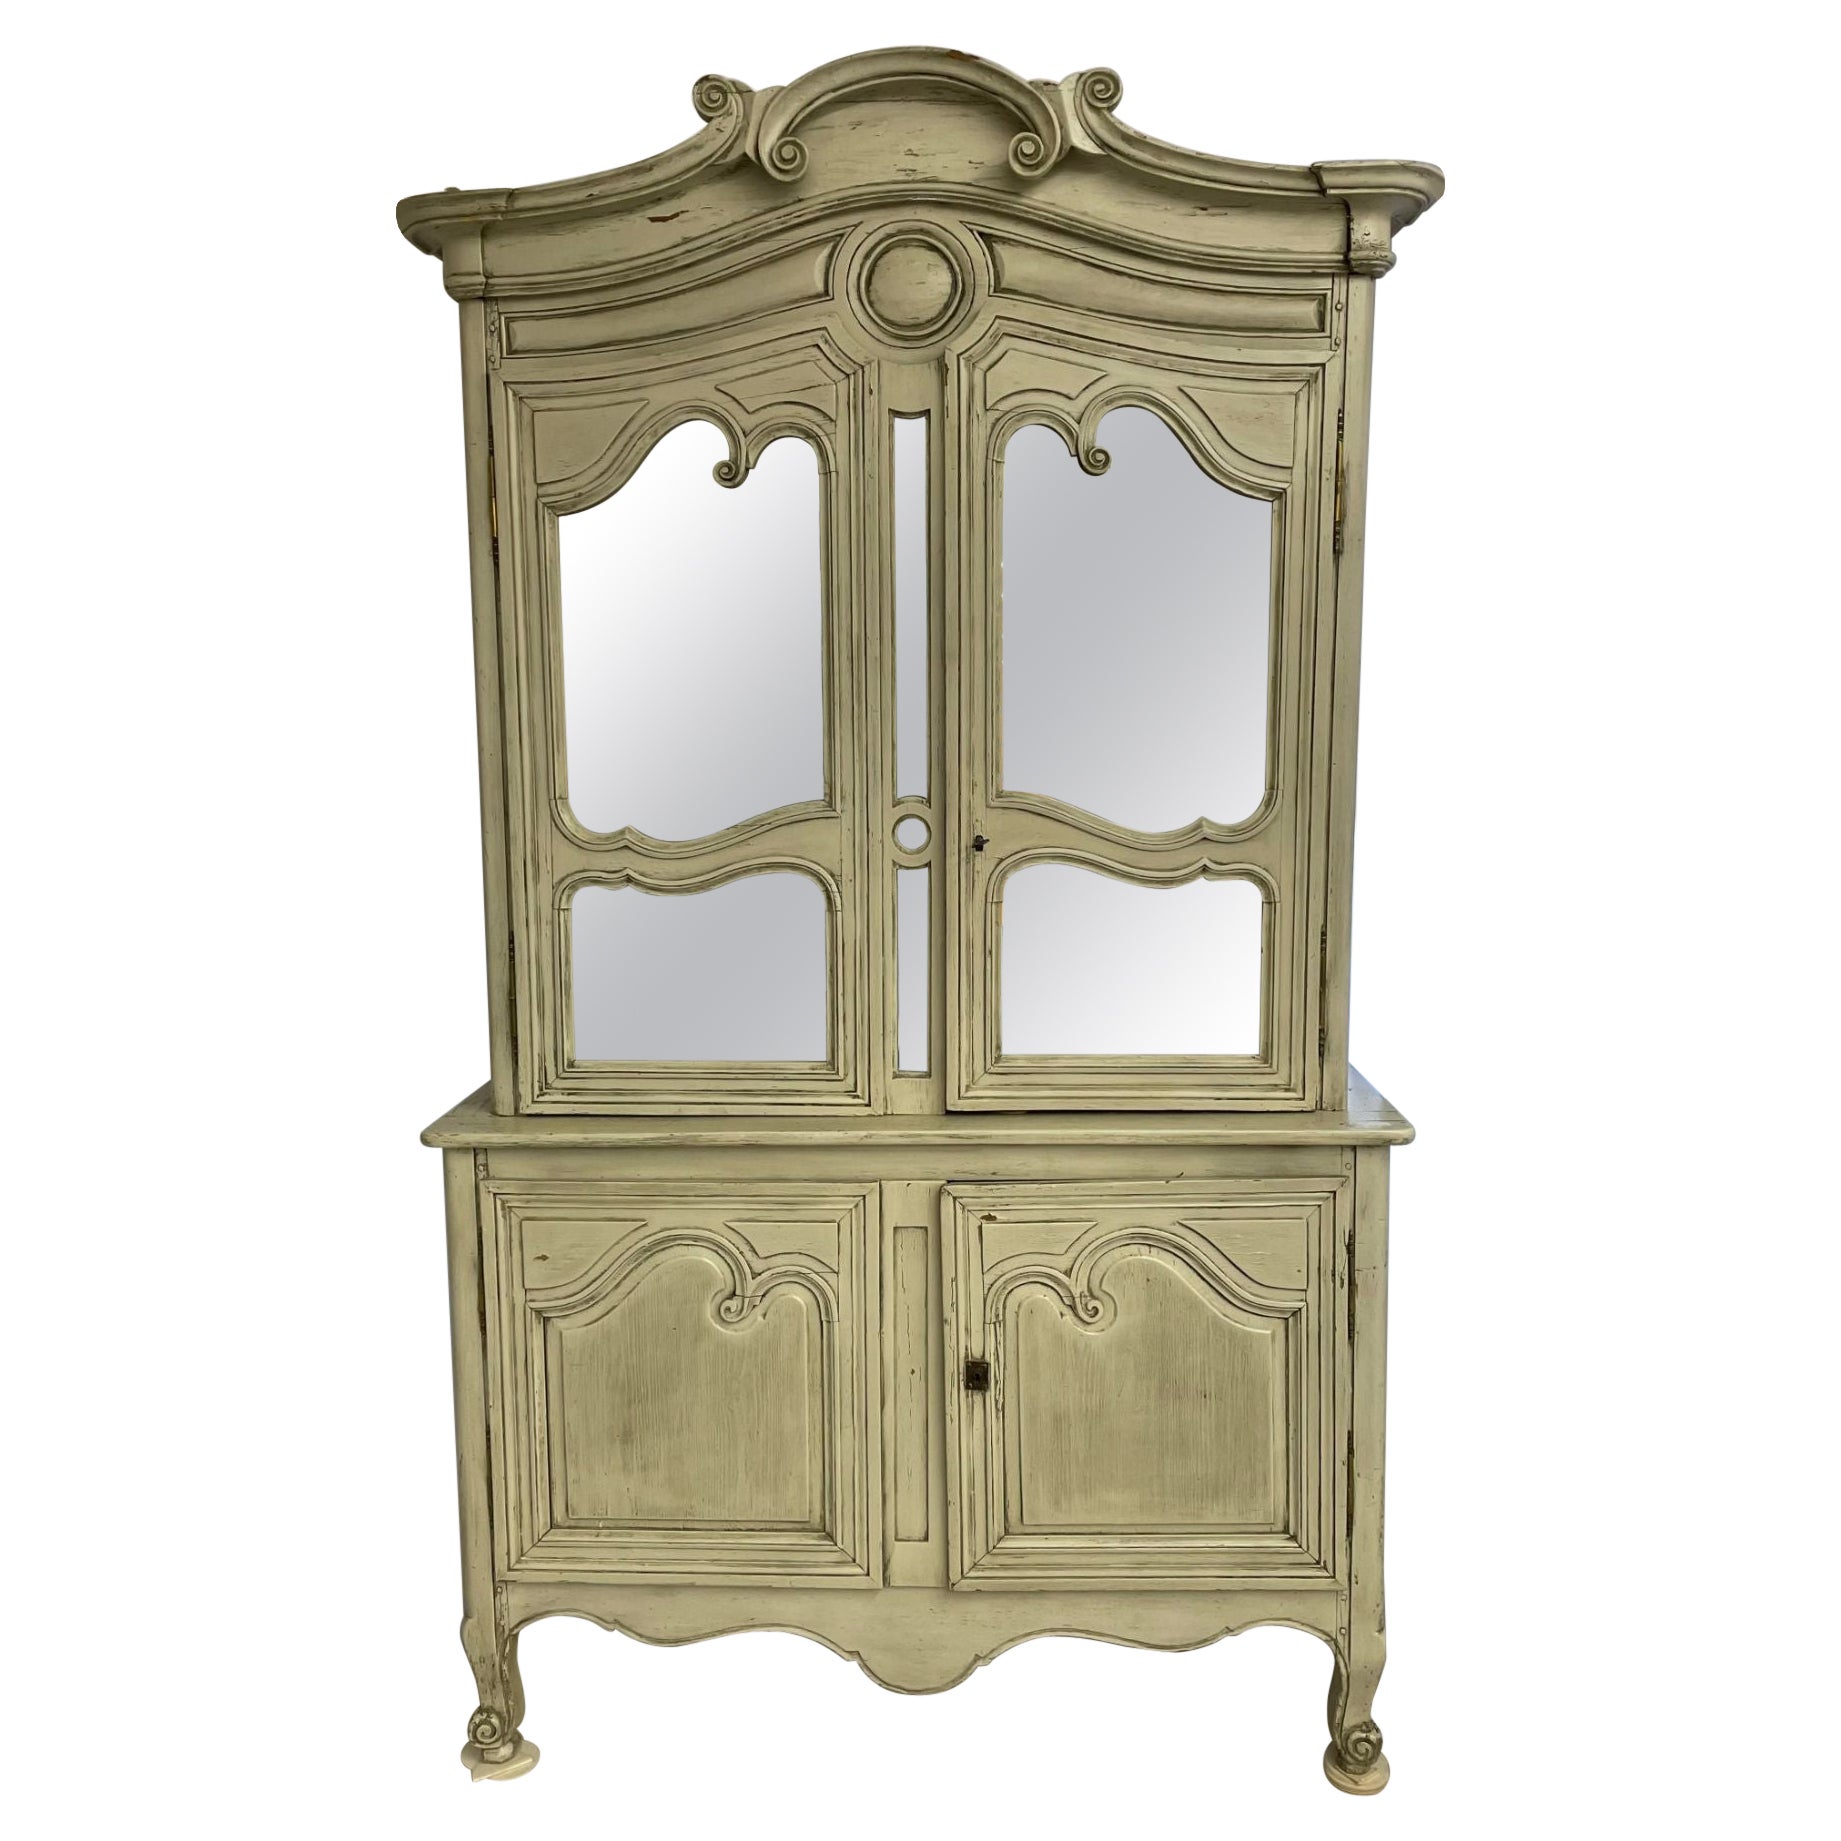 Bibliothèque gustavienne du 19ème siècle, armoire, miroir vieilli, français